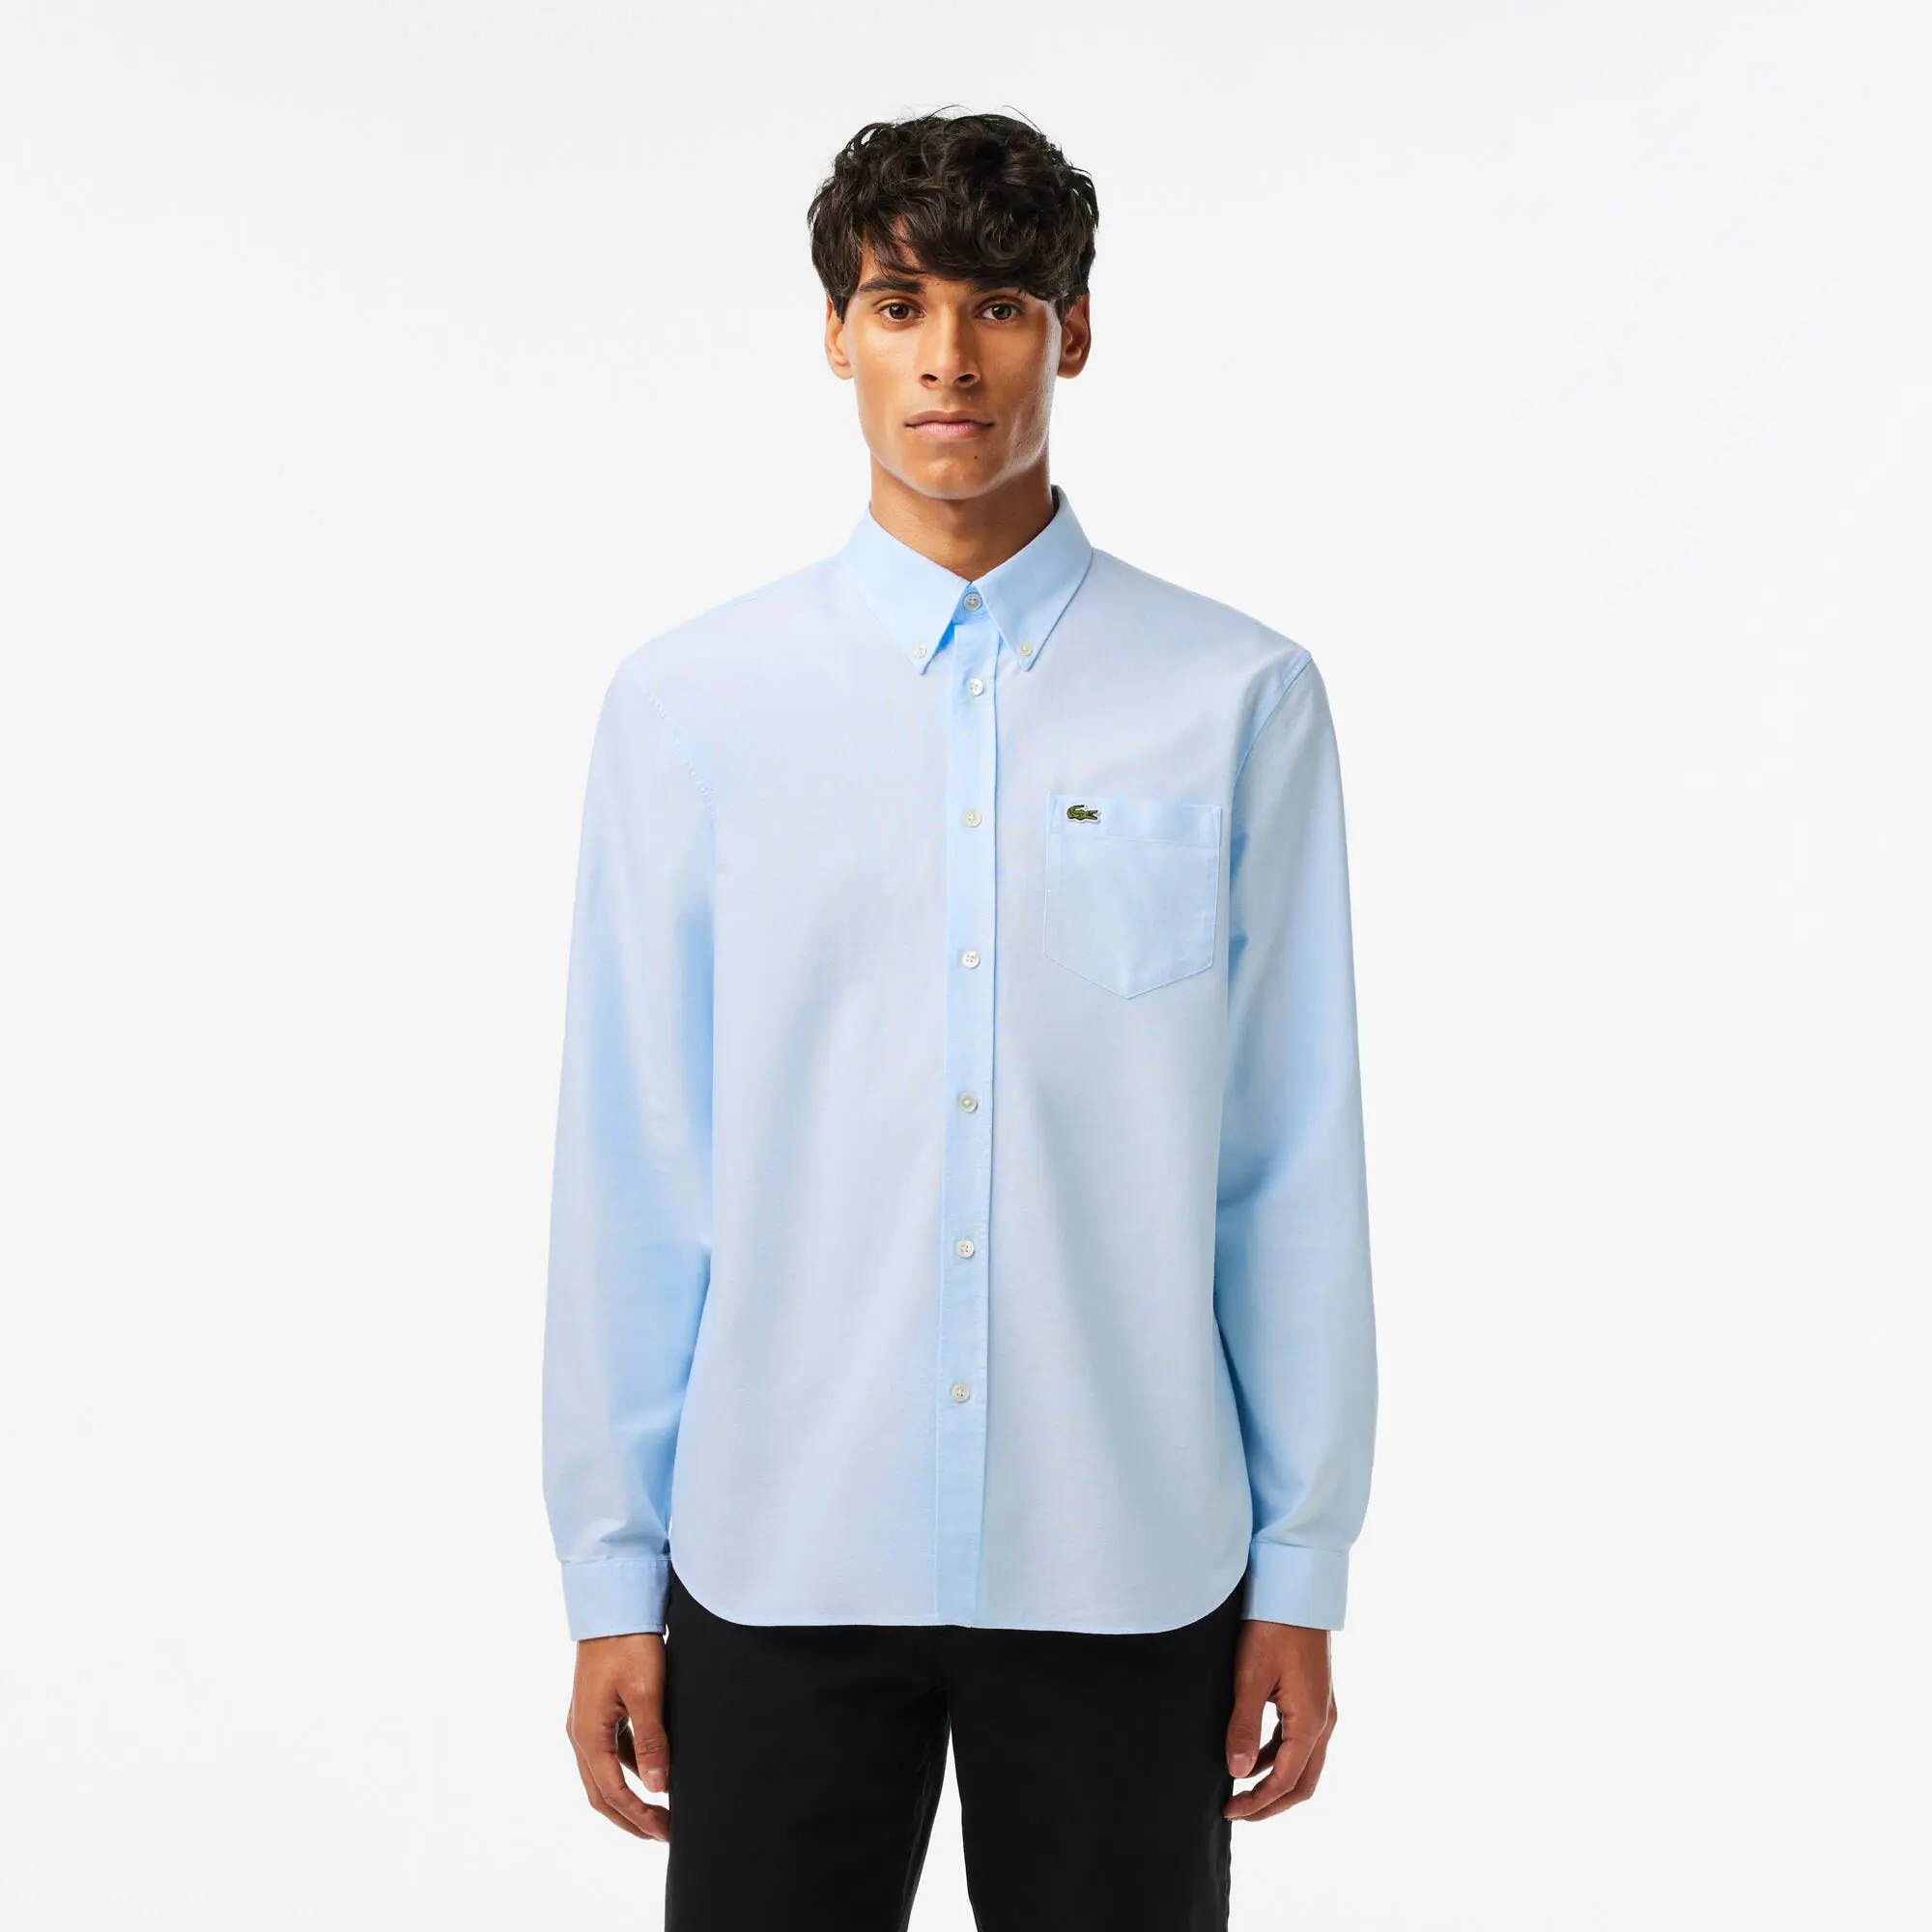 Lacoste Camicia Oxford di cotone regular fit. 1